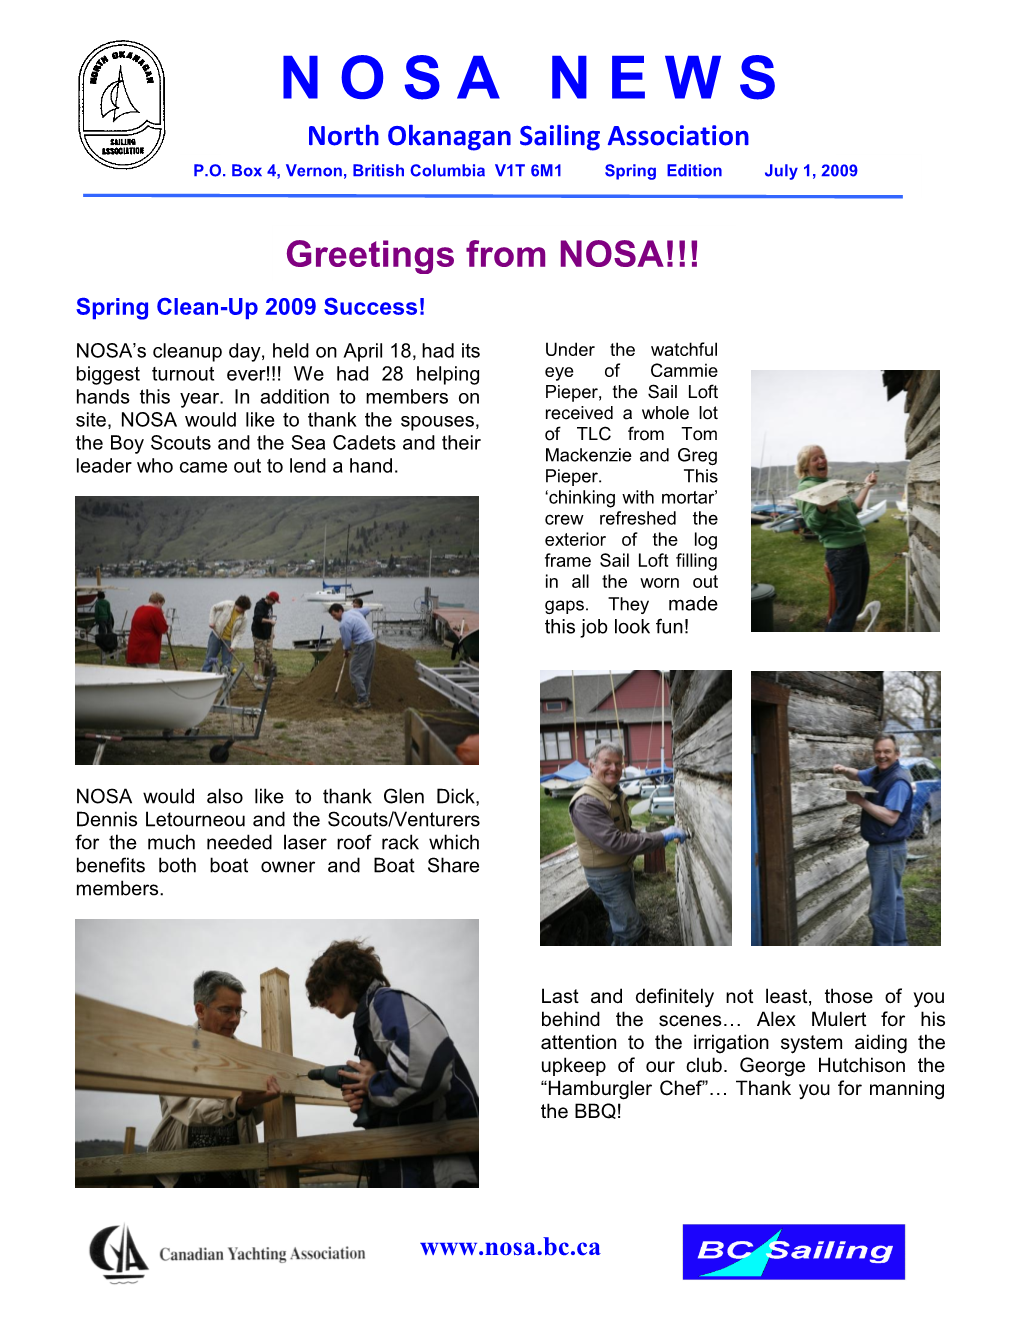 NOSANEWS North Okanagan Sailing Association Greetings from NOSA!!!